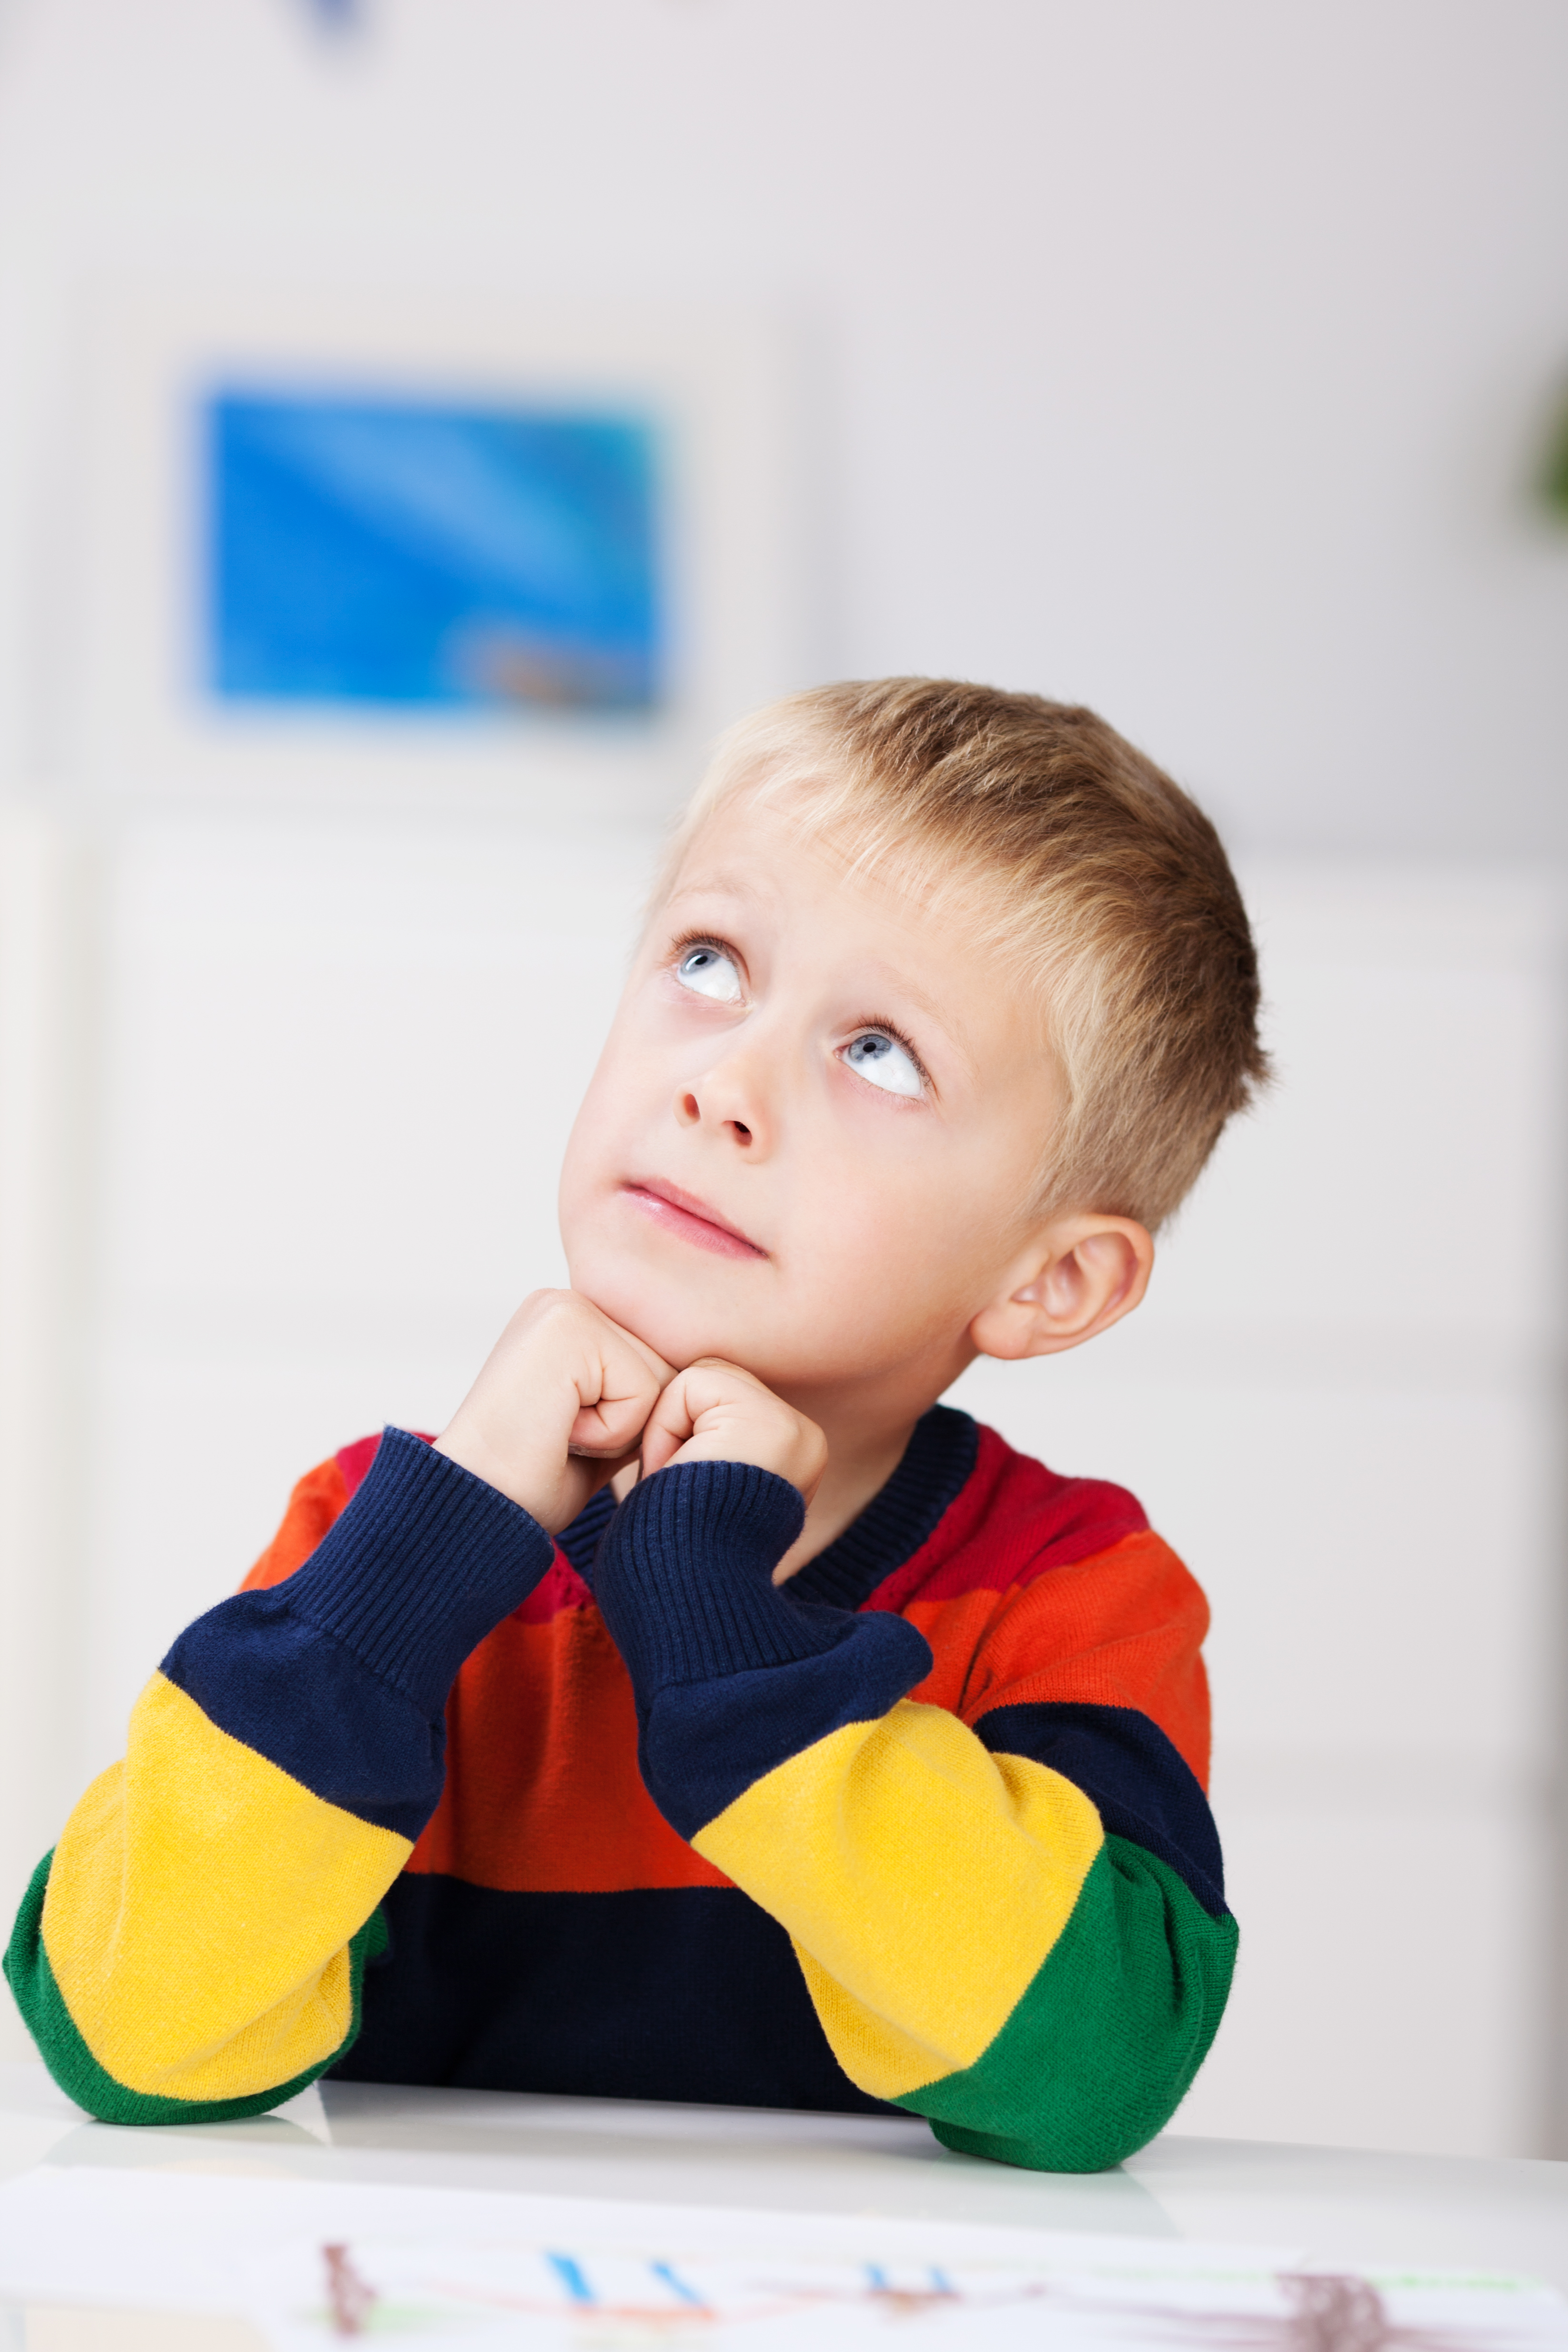 Un jeune garçon qui regarde le plafond | Source : Shutterstock